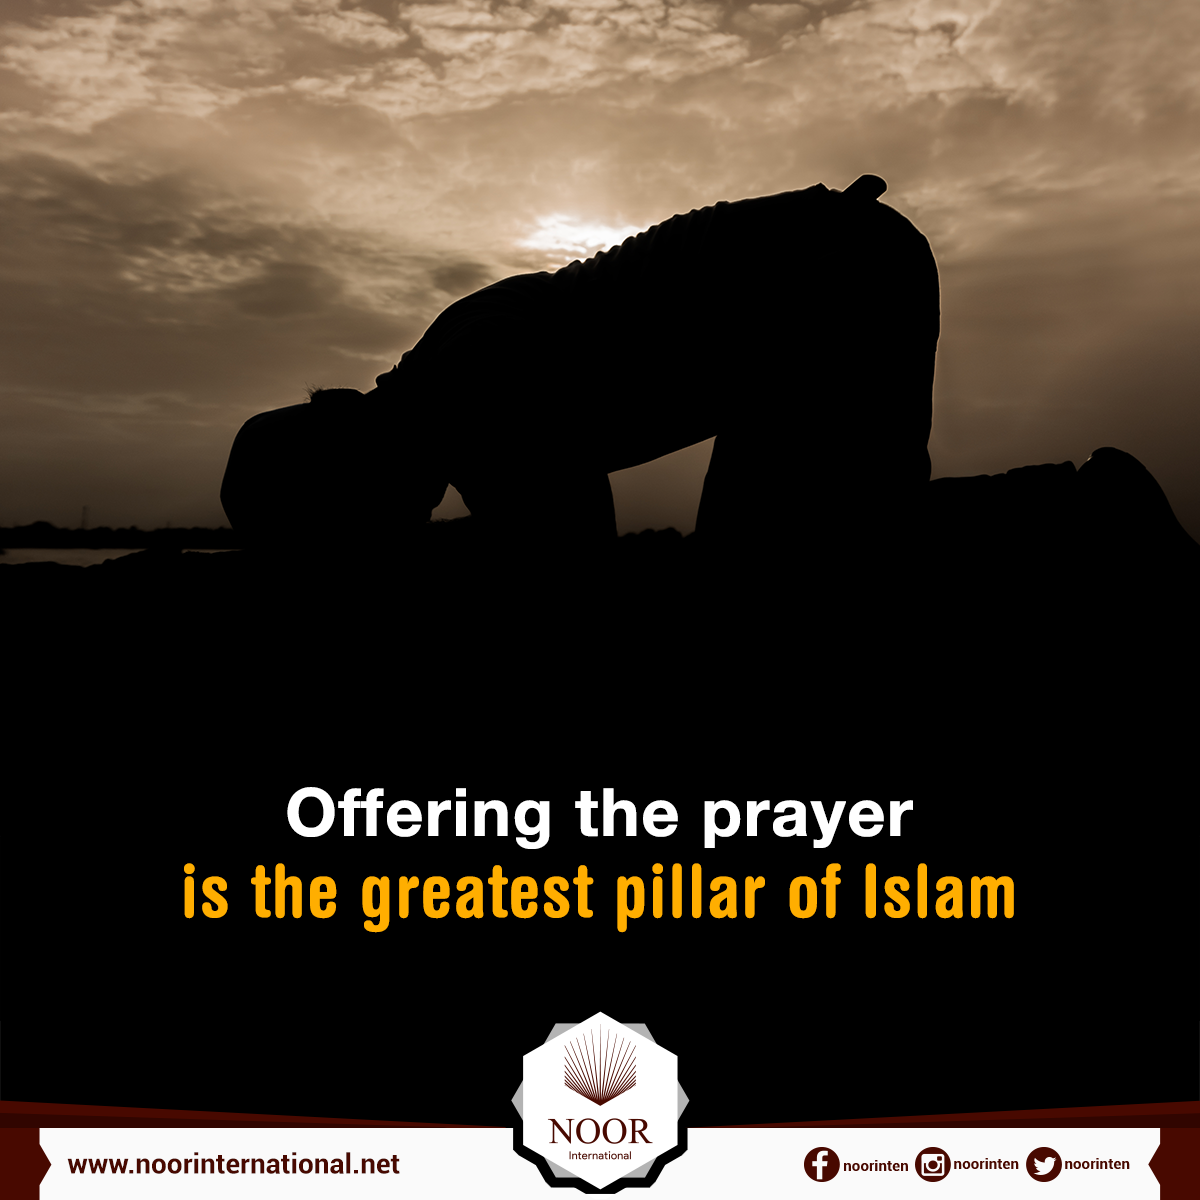 The Prayer and zakat